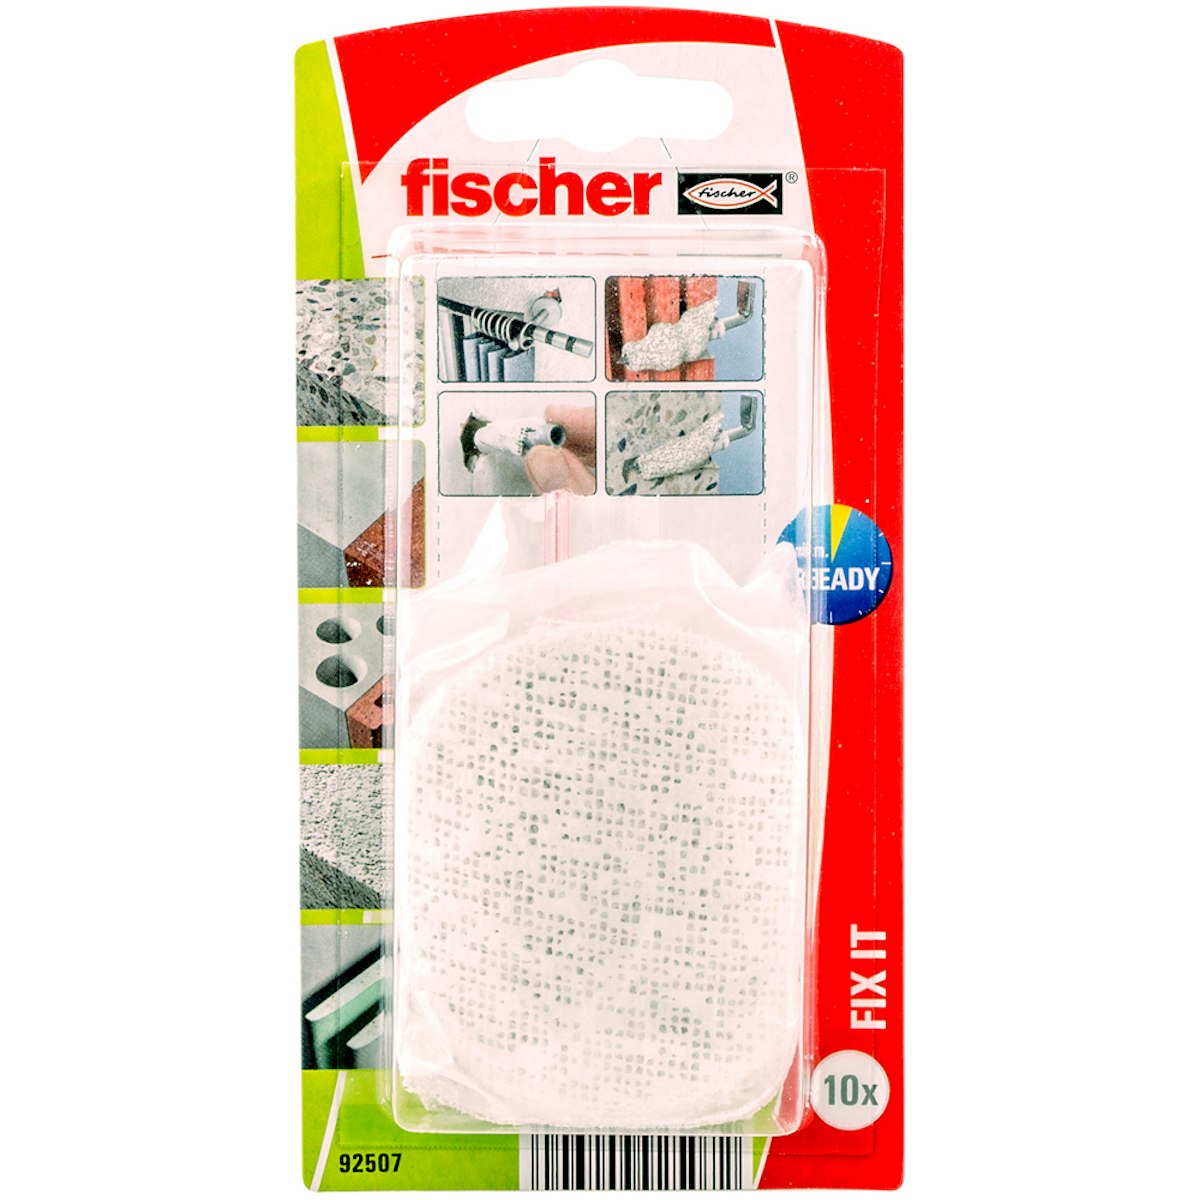 FISCHER Reparaturflies FIX.it (10 Stück) von fischerwerke GmbH & Co. KG